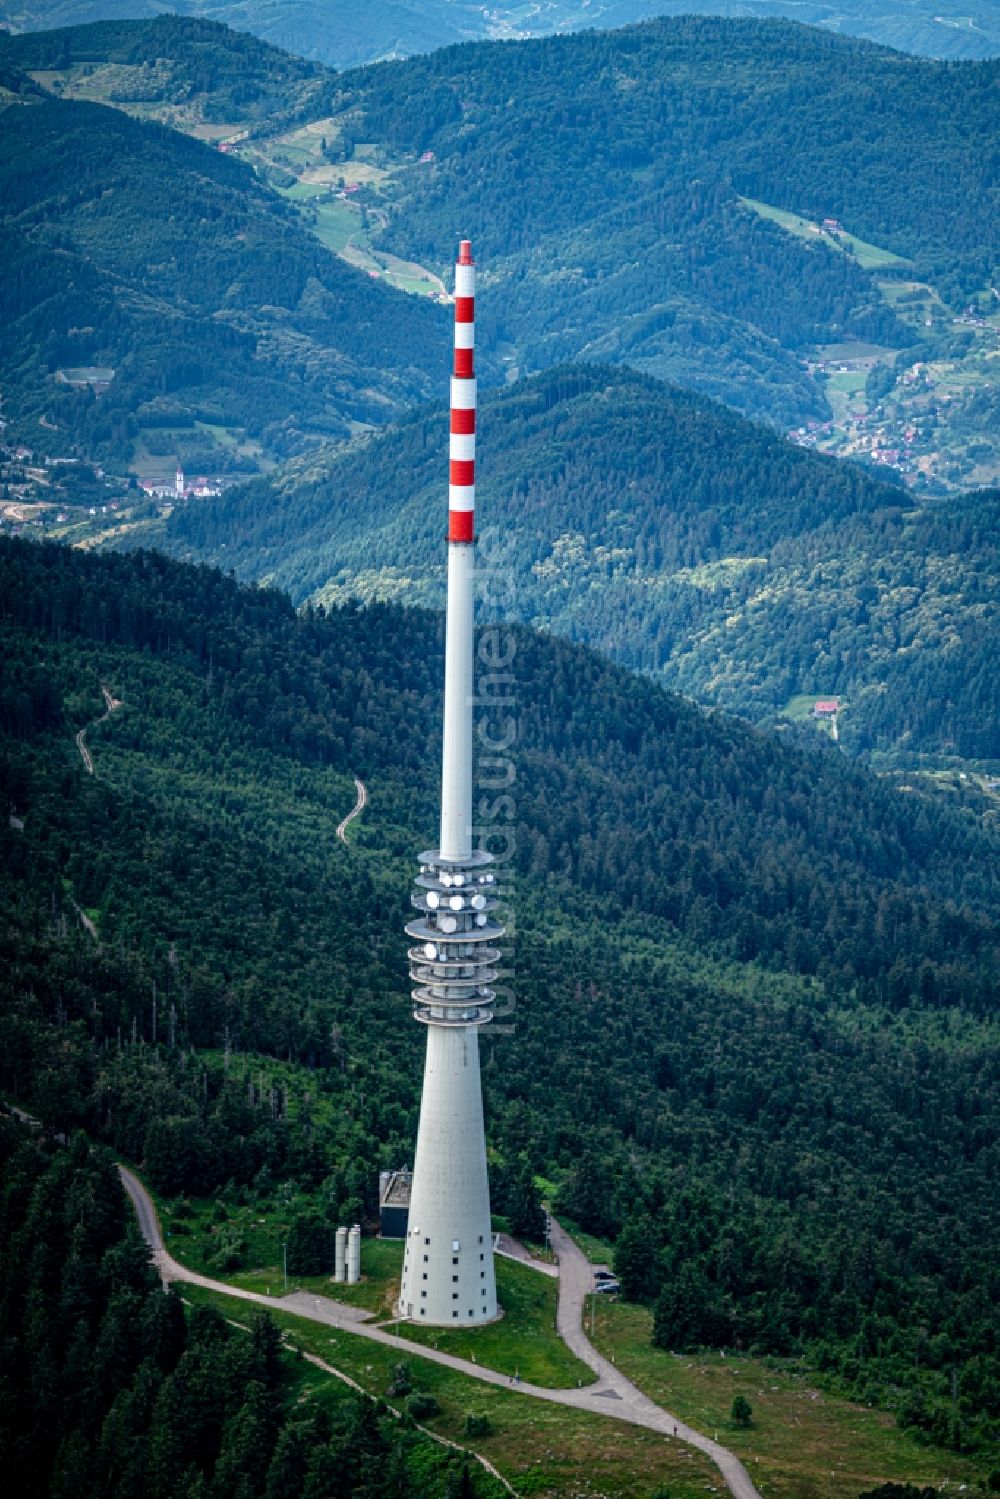 Luftbild Sasbachwalden - Fernmeldeturm und Fernsehturm in Sasbachwalden Hornisgrunde, im Bundesland Baden-Württemberg, Deutschland